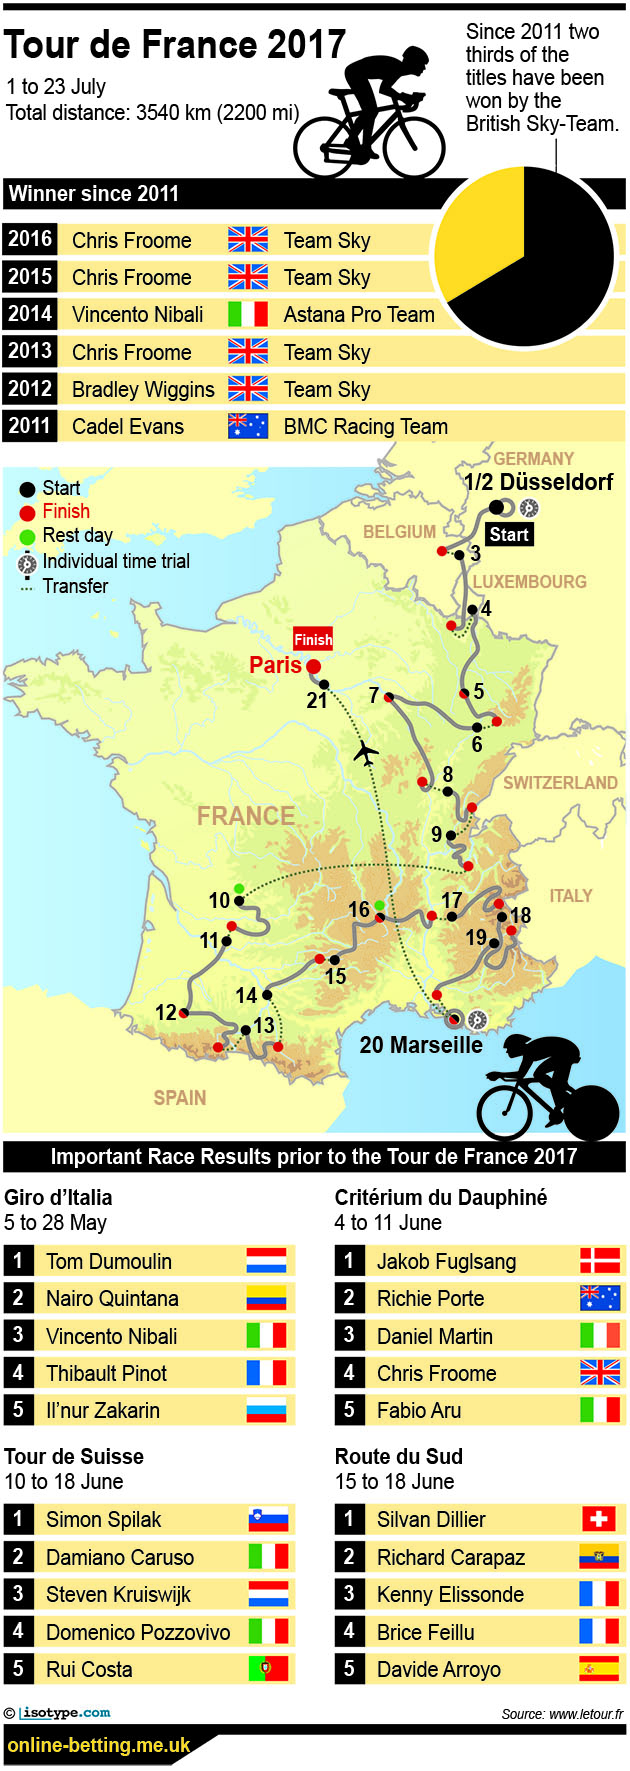 Tour de France 2017 Infographic